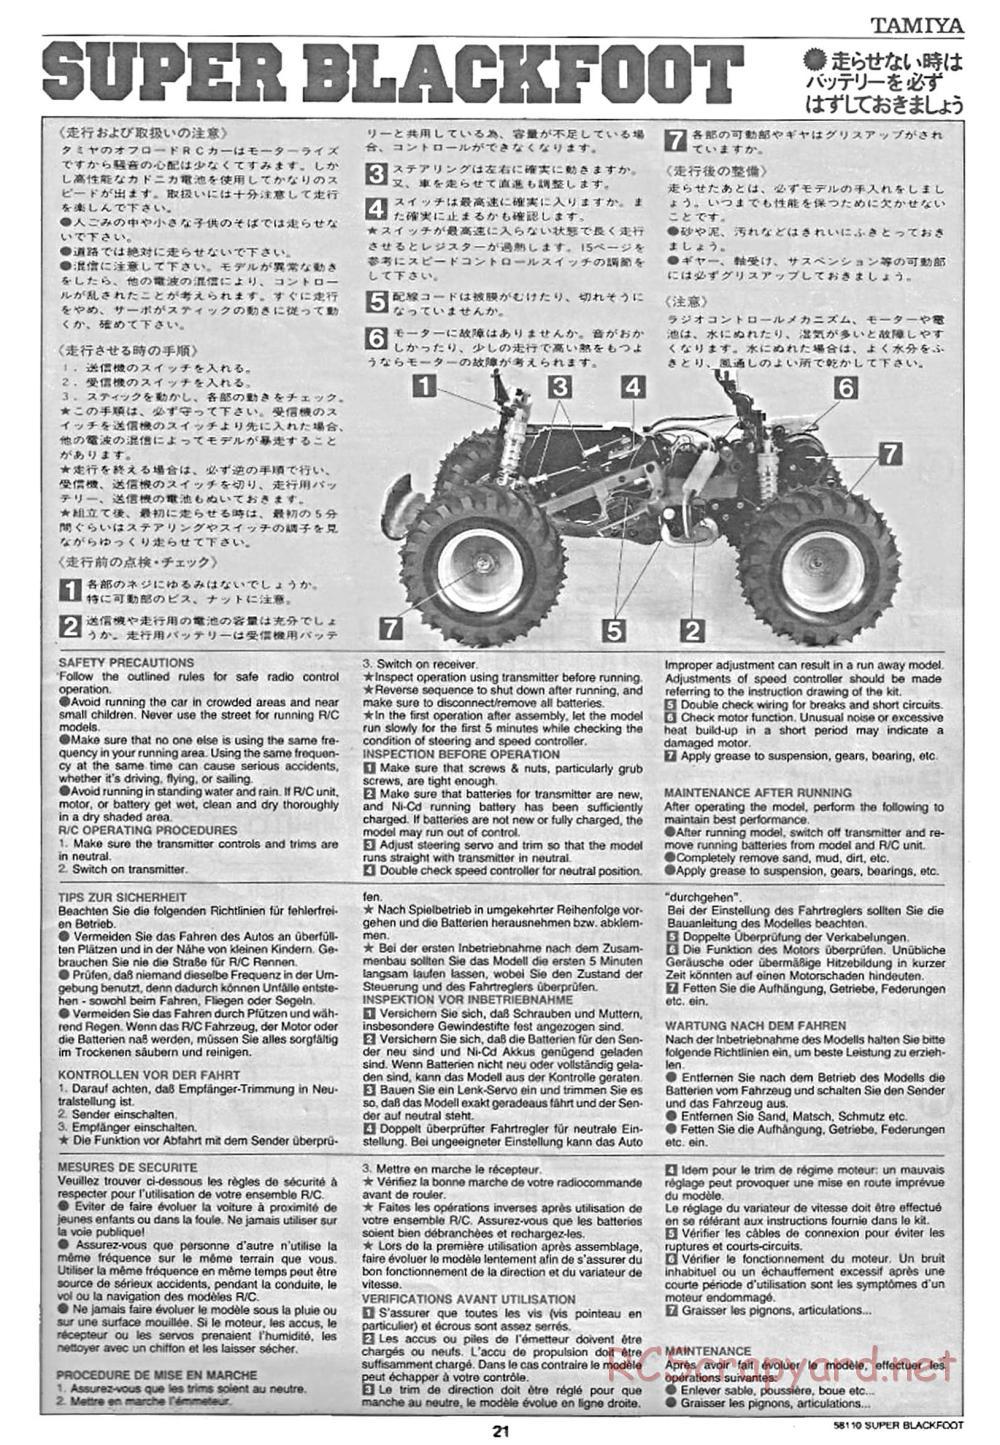 Tamiya - Super Blackfoot Chassis - Manual - Page 21